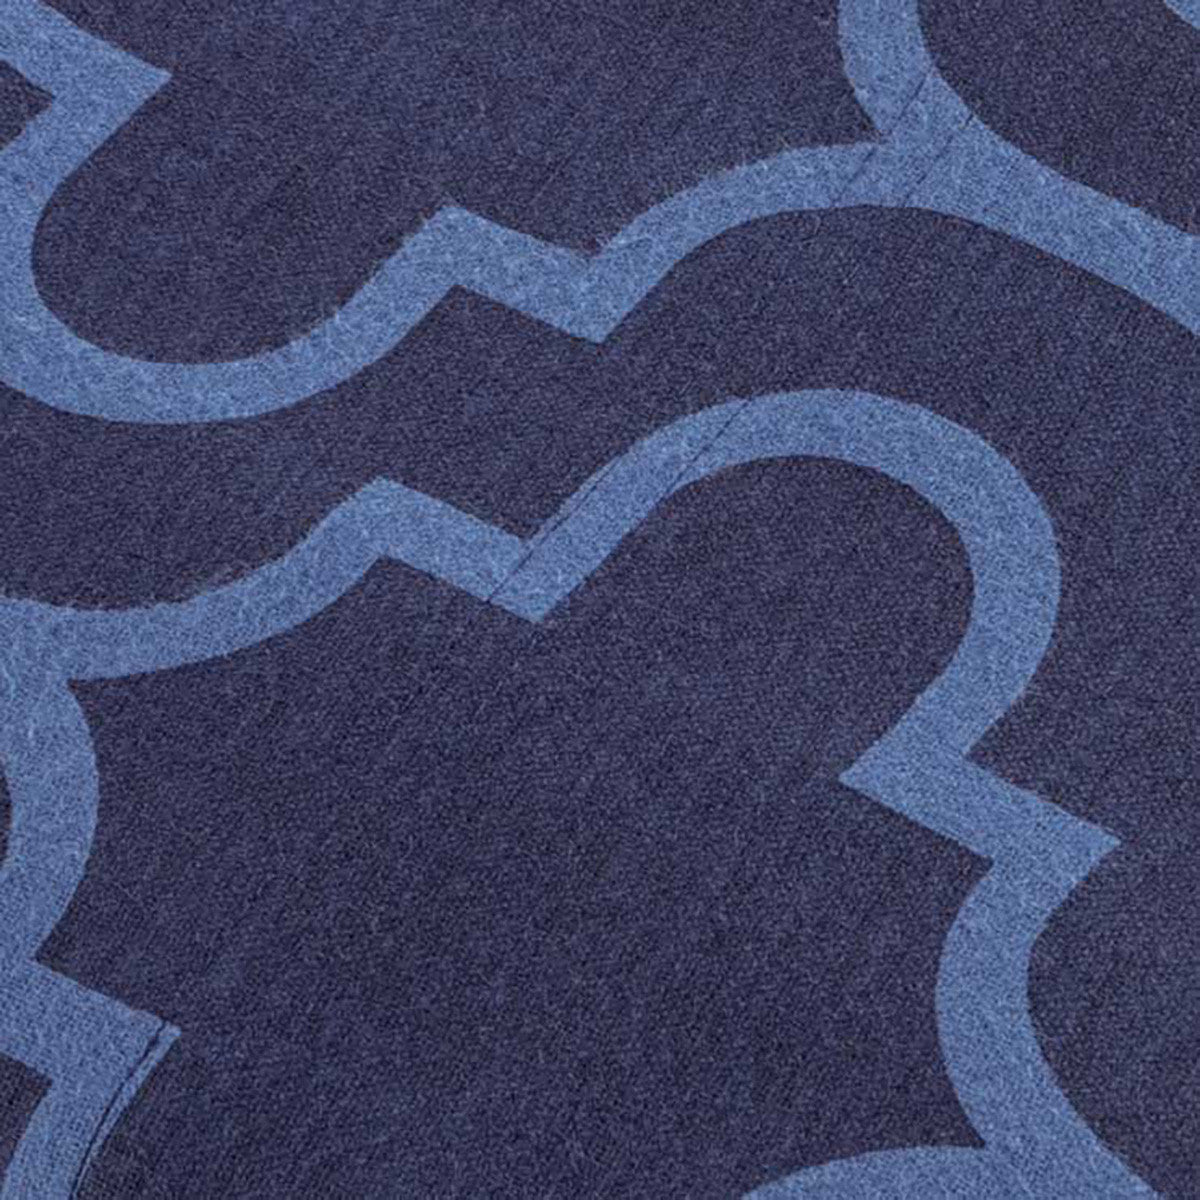 Navy Blue Queen Cotton Blend Thread Count Washable Duvet Cover Set